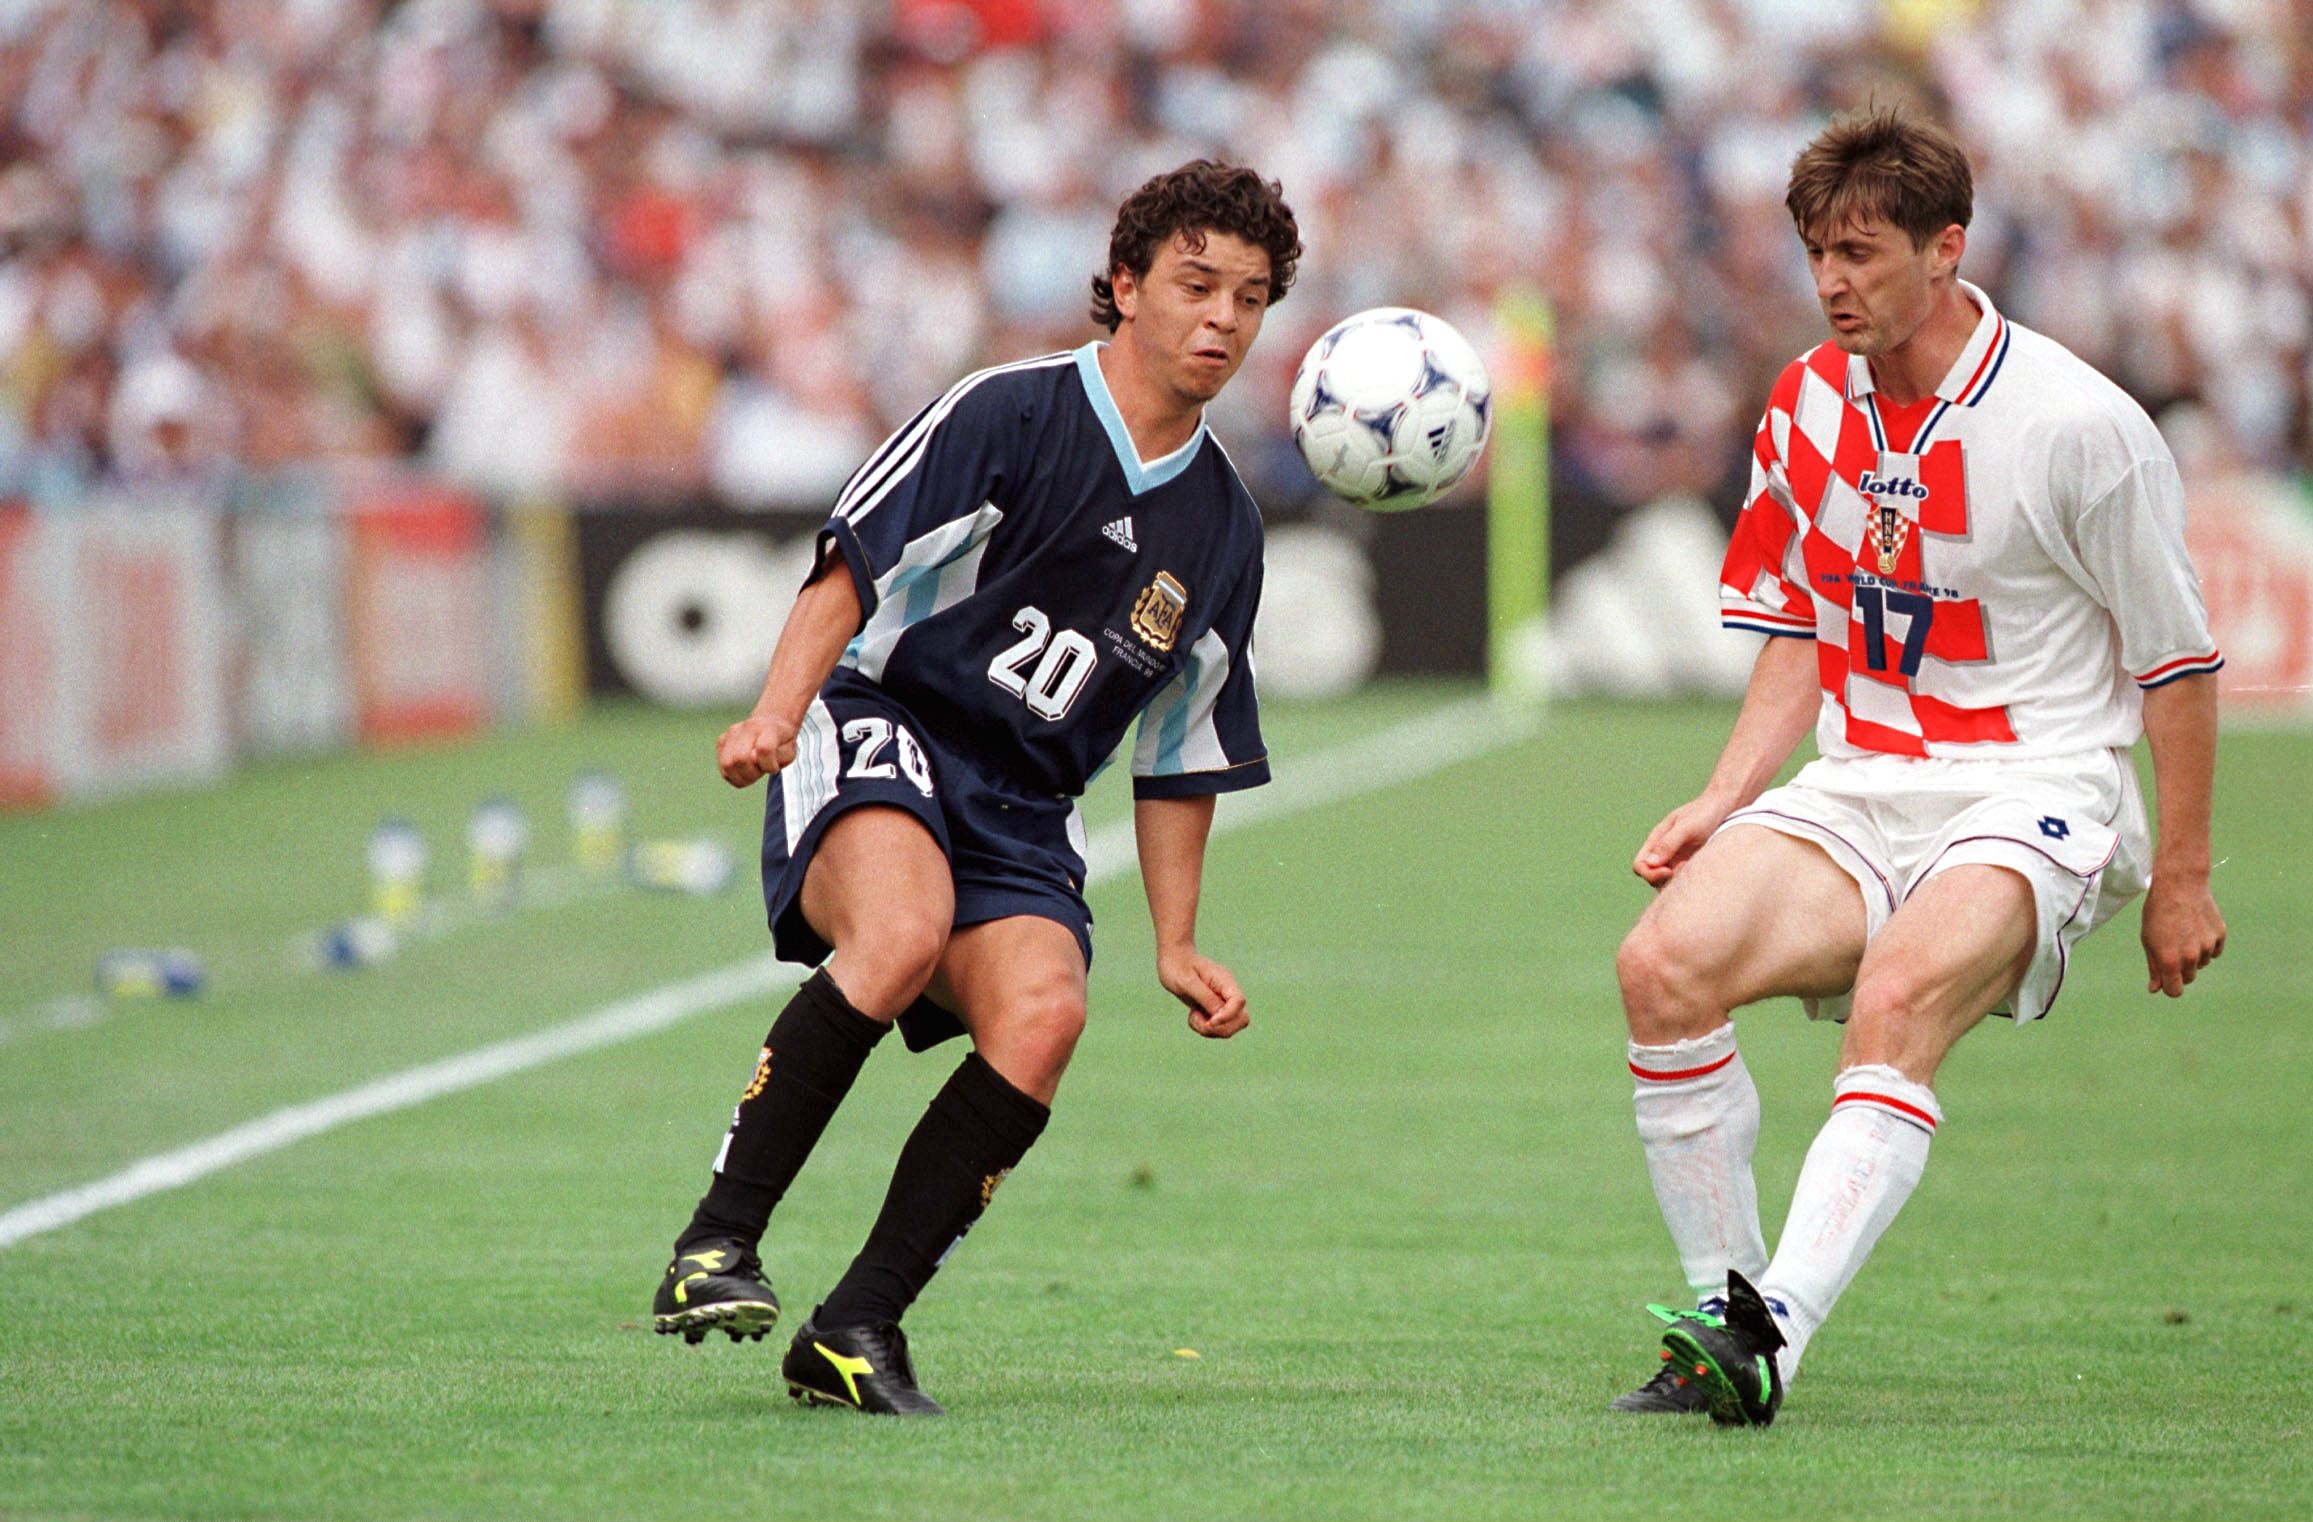 Este fue el único partido del Muñeco Gallardo como titular en el Mundial 98 (THIERRY ORBAN/Sygma via Getty Images)